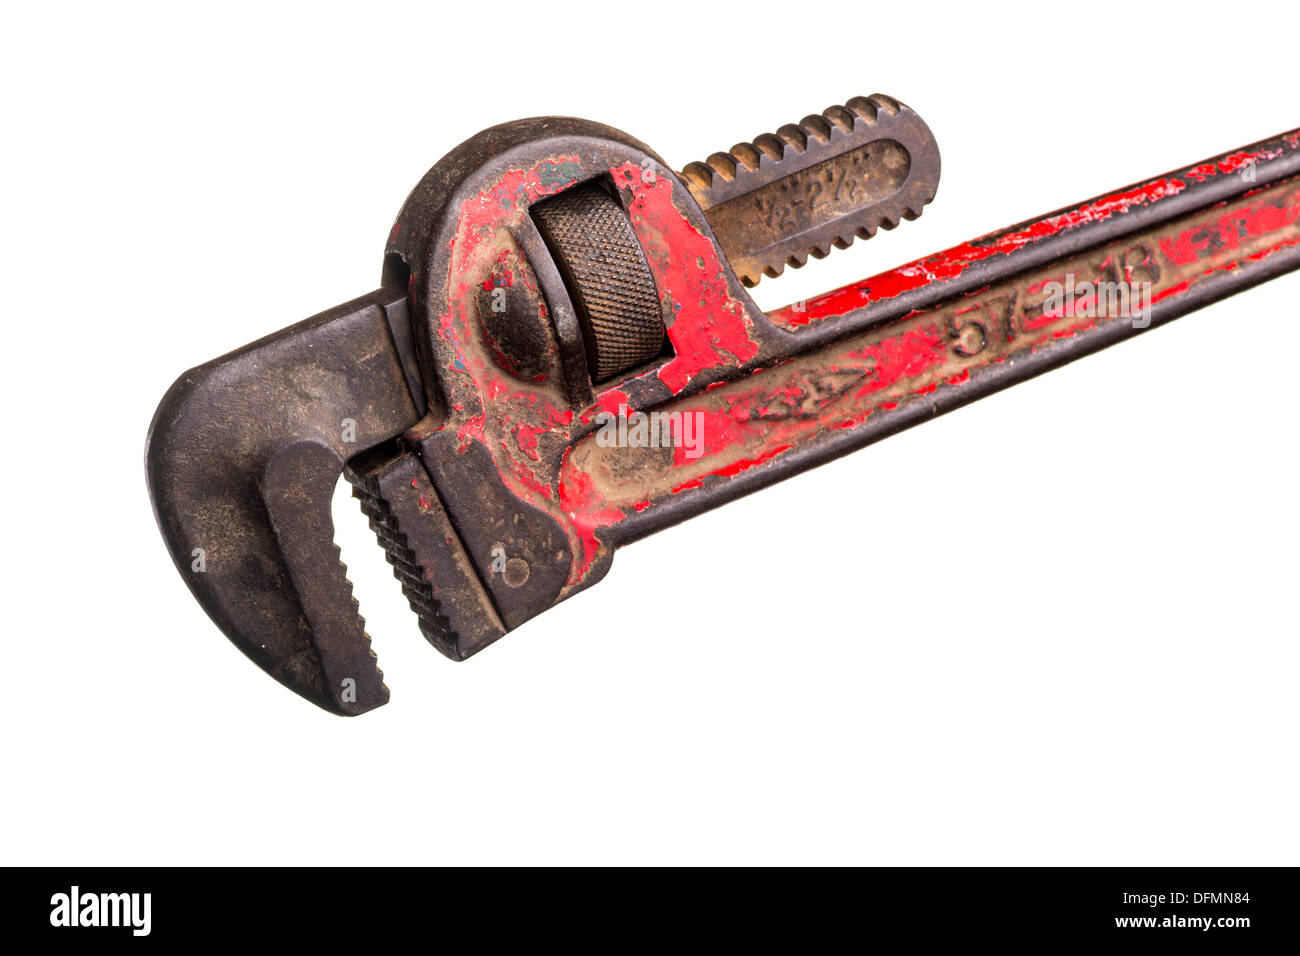 Einem alten klapprigen Installateur Schraubenschlüssel hat seine roten Farbe teilweise abgeblättert Stockfoto